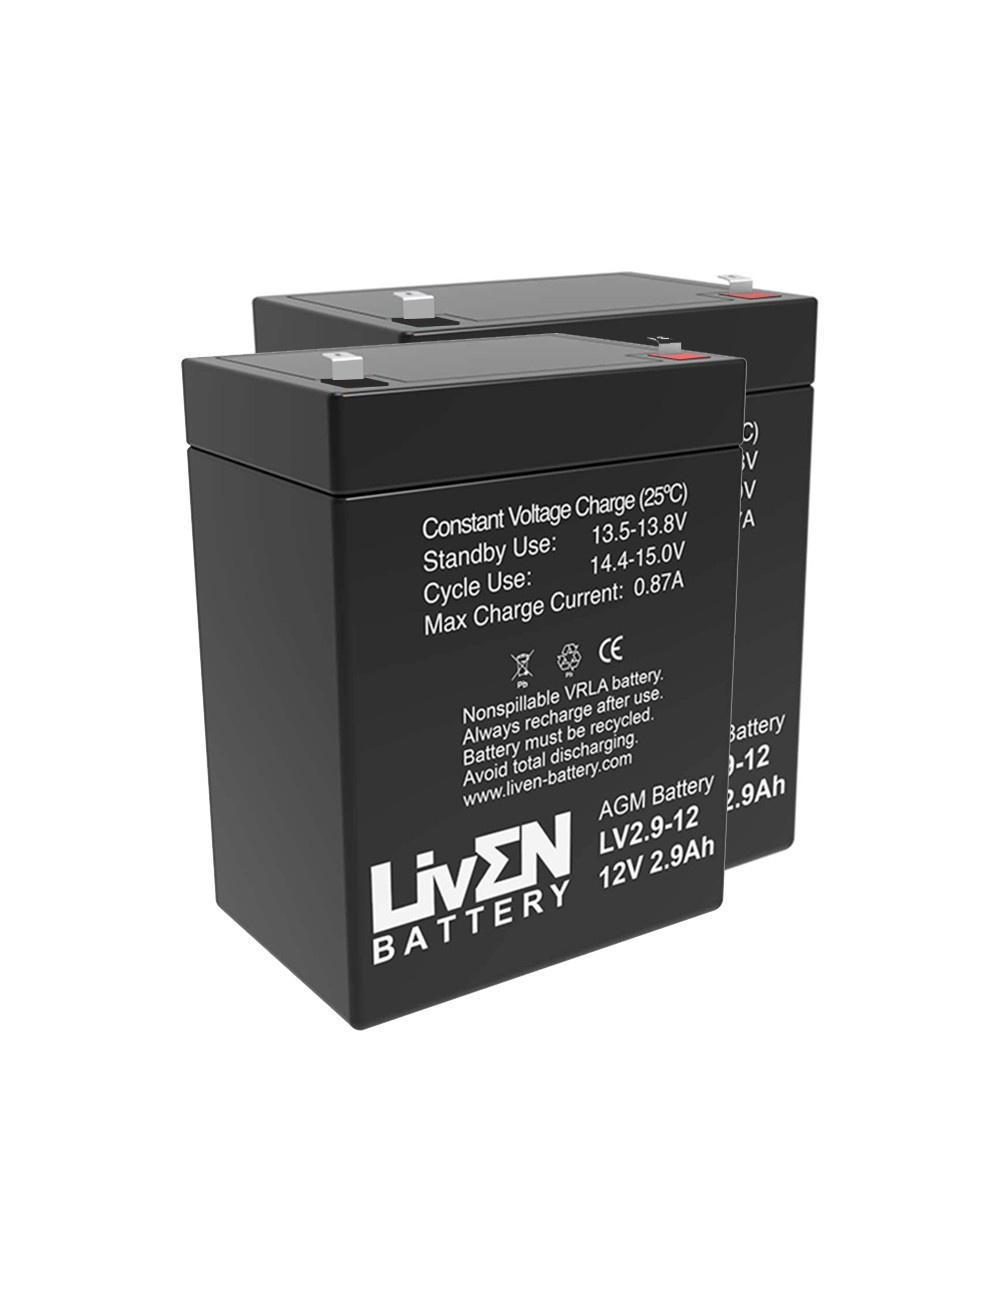 Pacote 2 baterias (24V) para elevadores de transferência e cestas Obea Lifty 6 de 12V 2,9Ah C20 Liven LV2.9-12 - 1